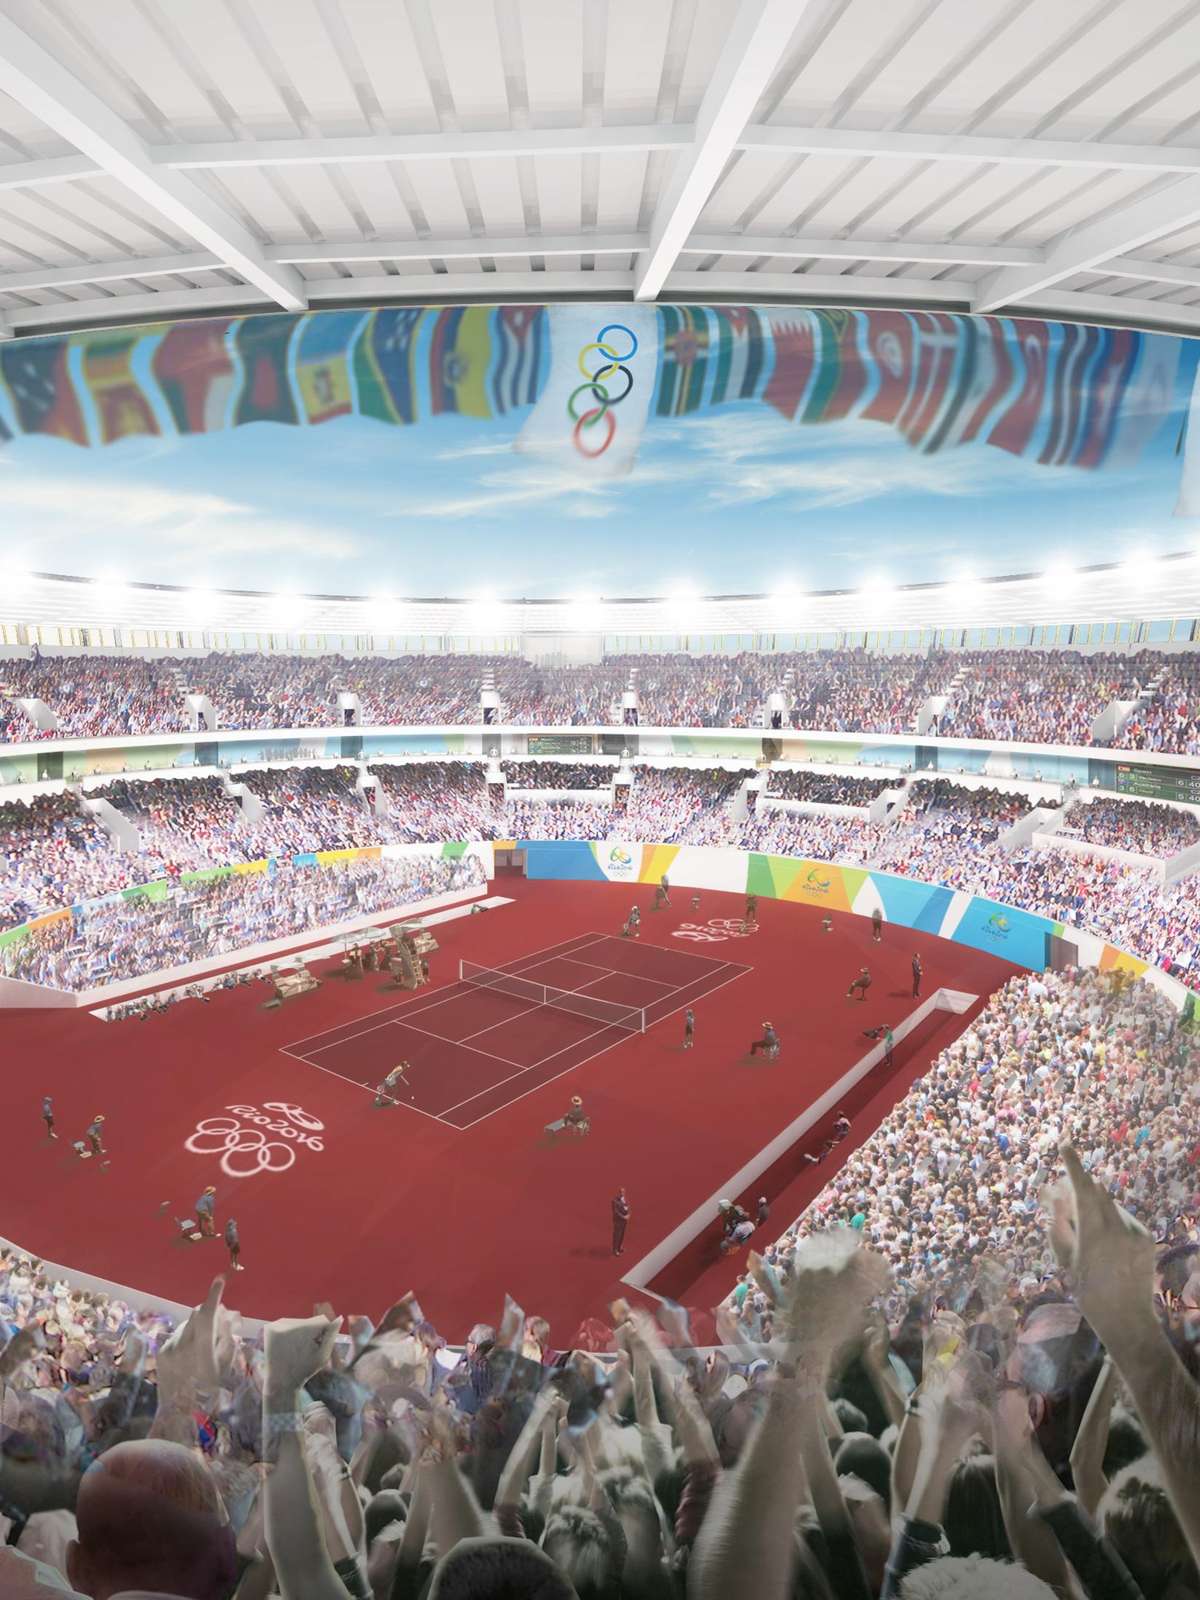 Jogos Rio-2016 com sete estádios para a modalidade de Futebol